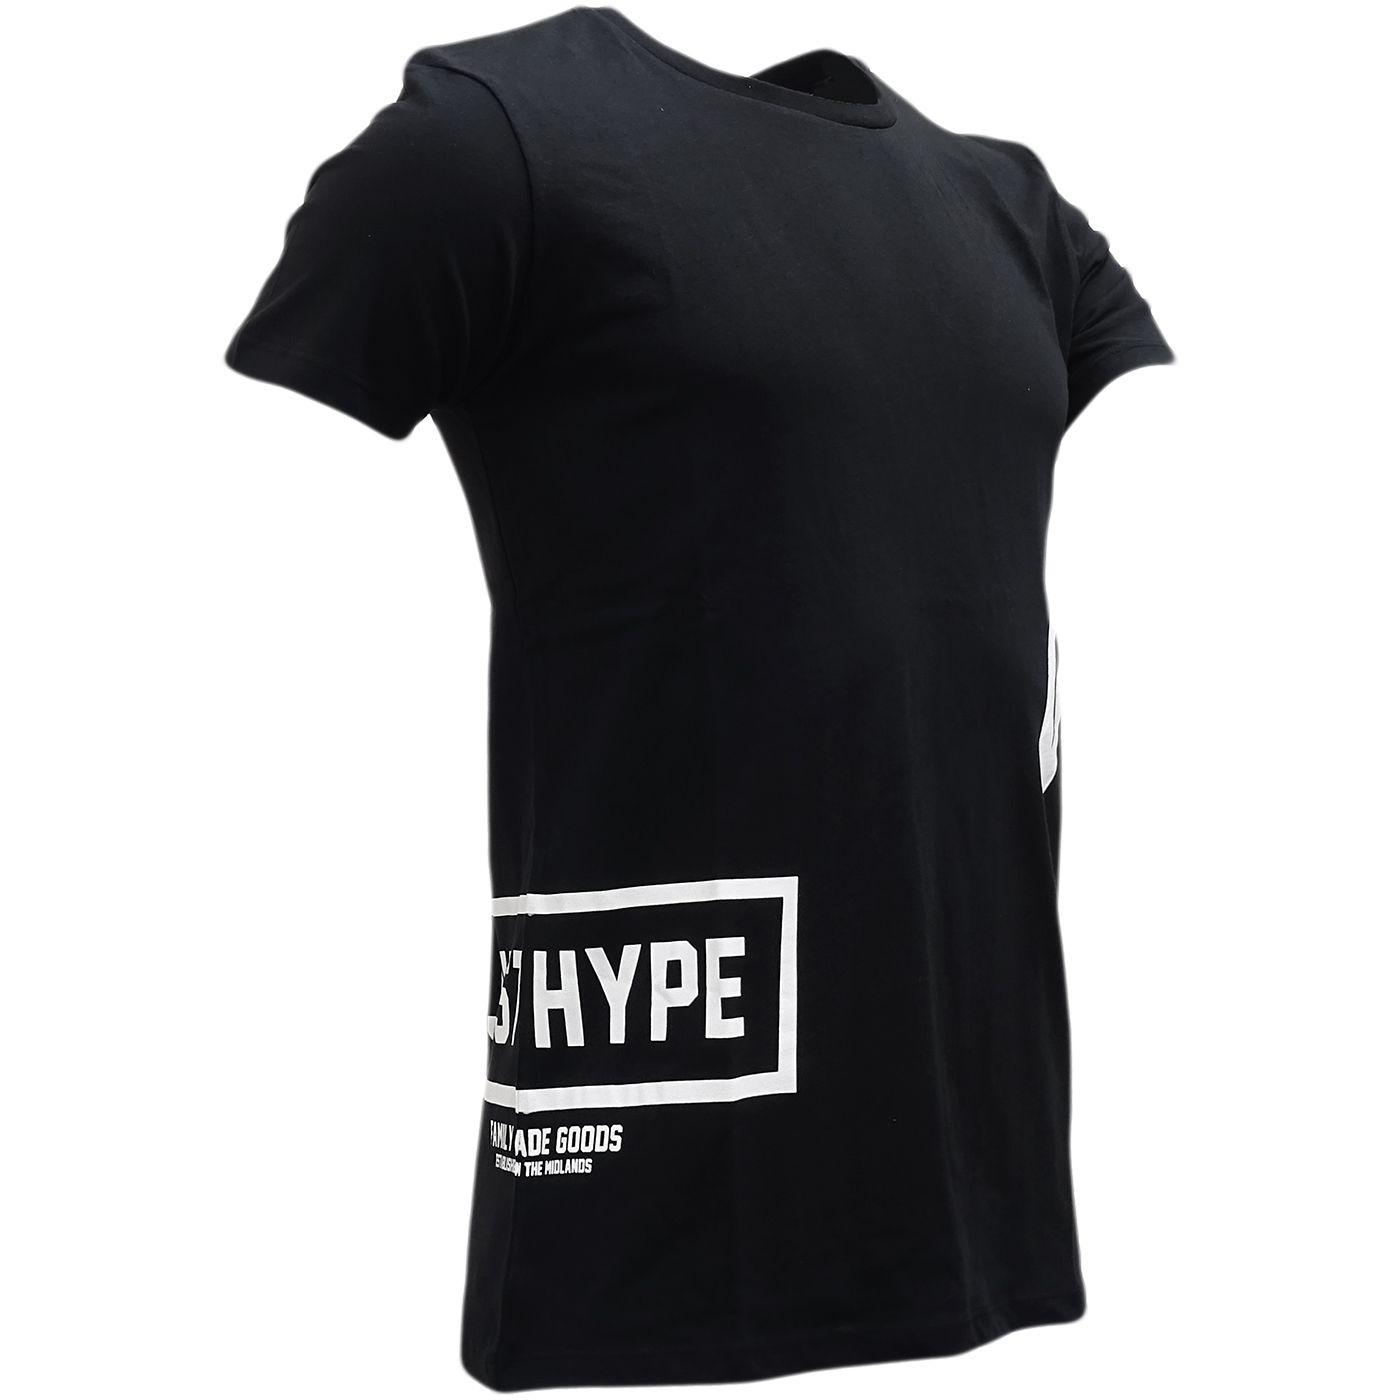 Side Logo - Hype Black Side Logo T-Shirt - Multiple Logo - NEW | eBay